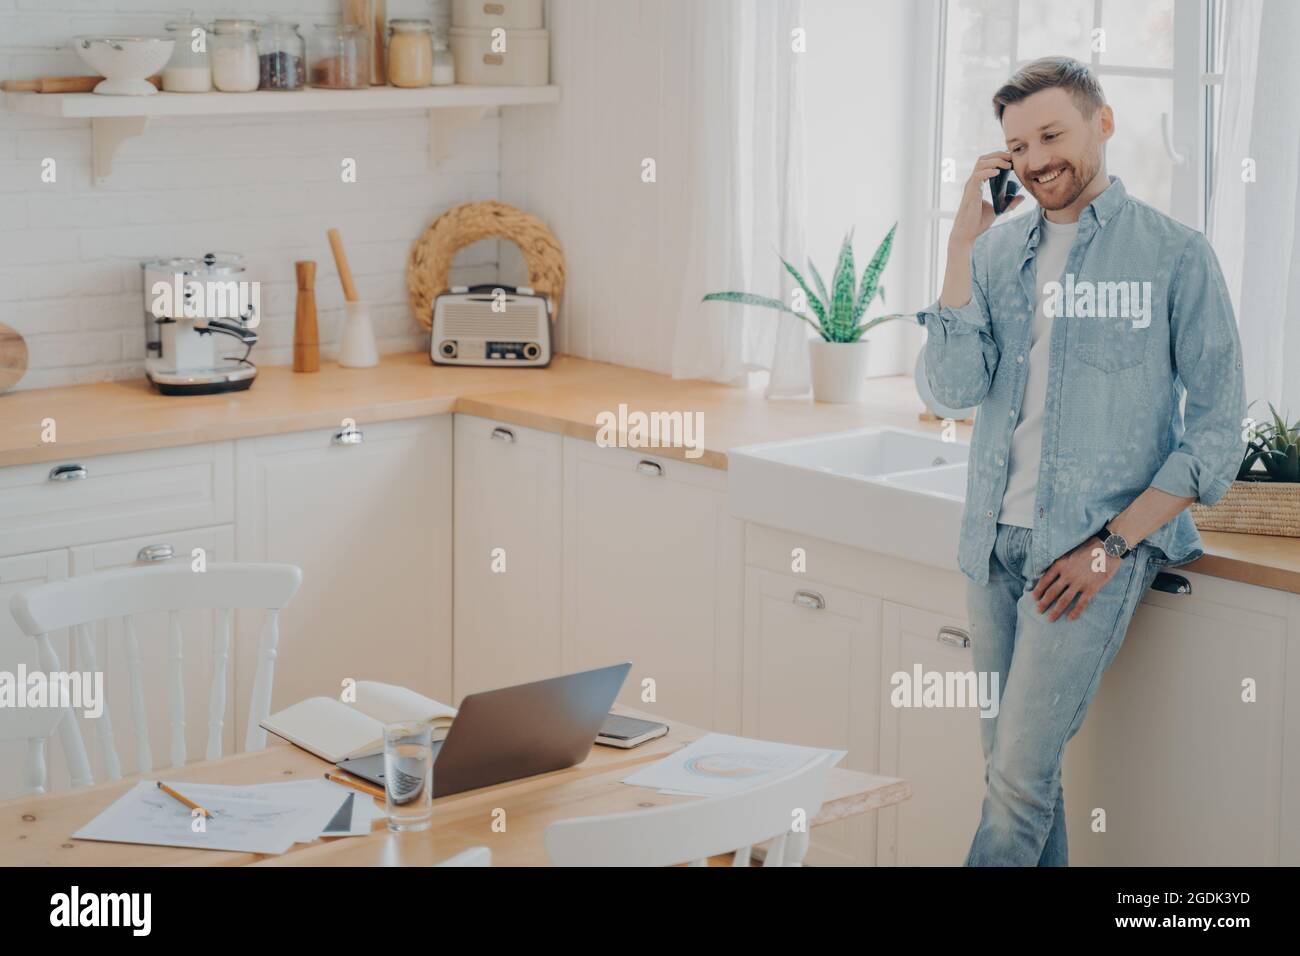 Glücklicher junger kaukasischer Mann, der in der Küche ein Gespräch mit dem Handy geführt hat Stockfoto